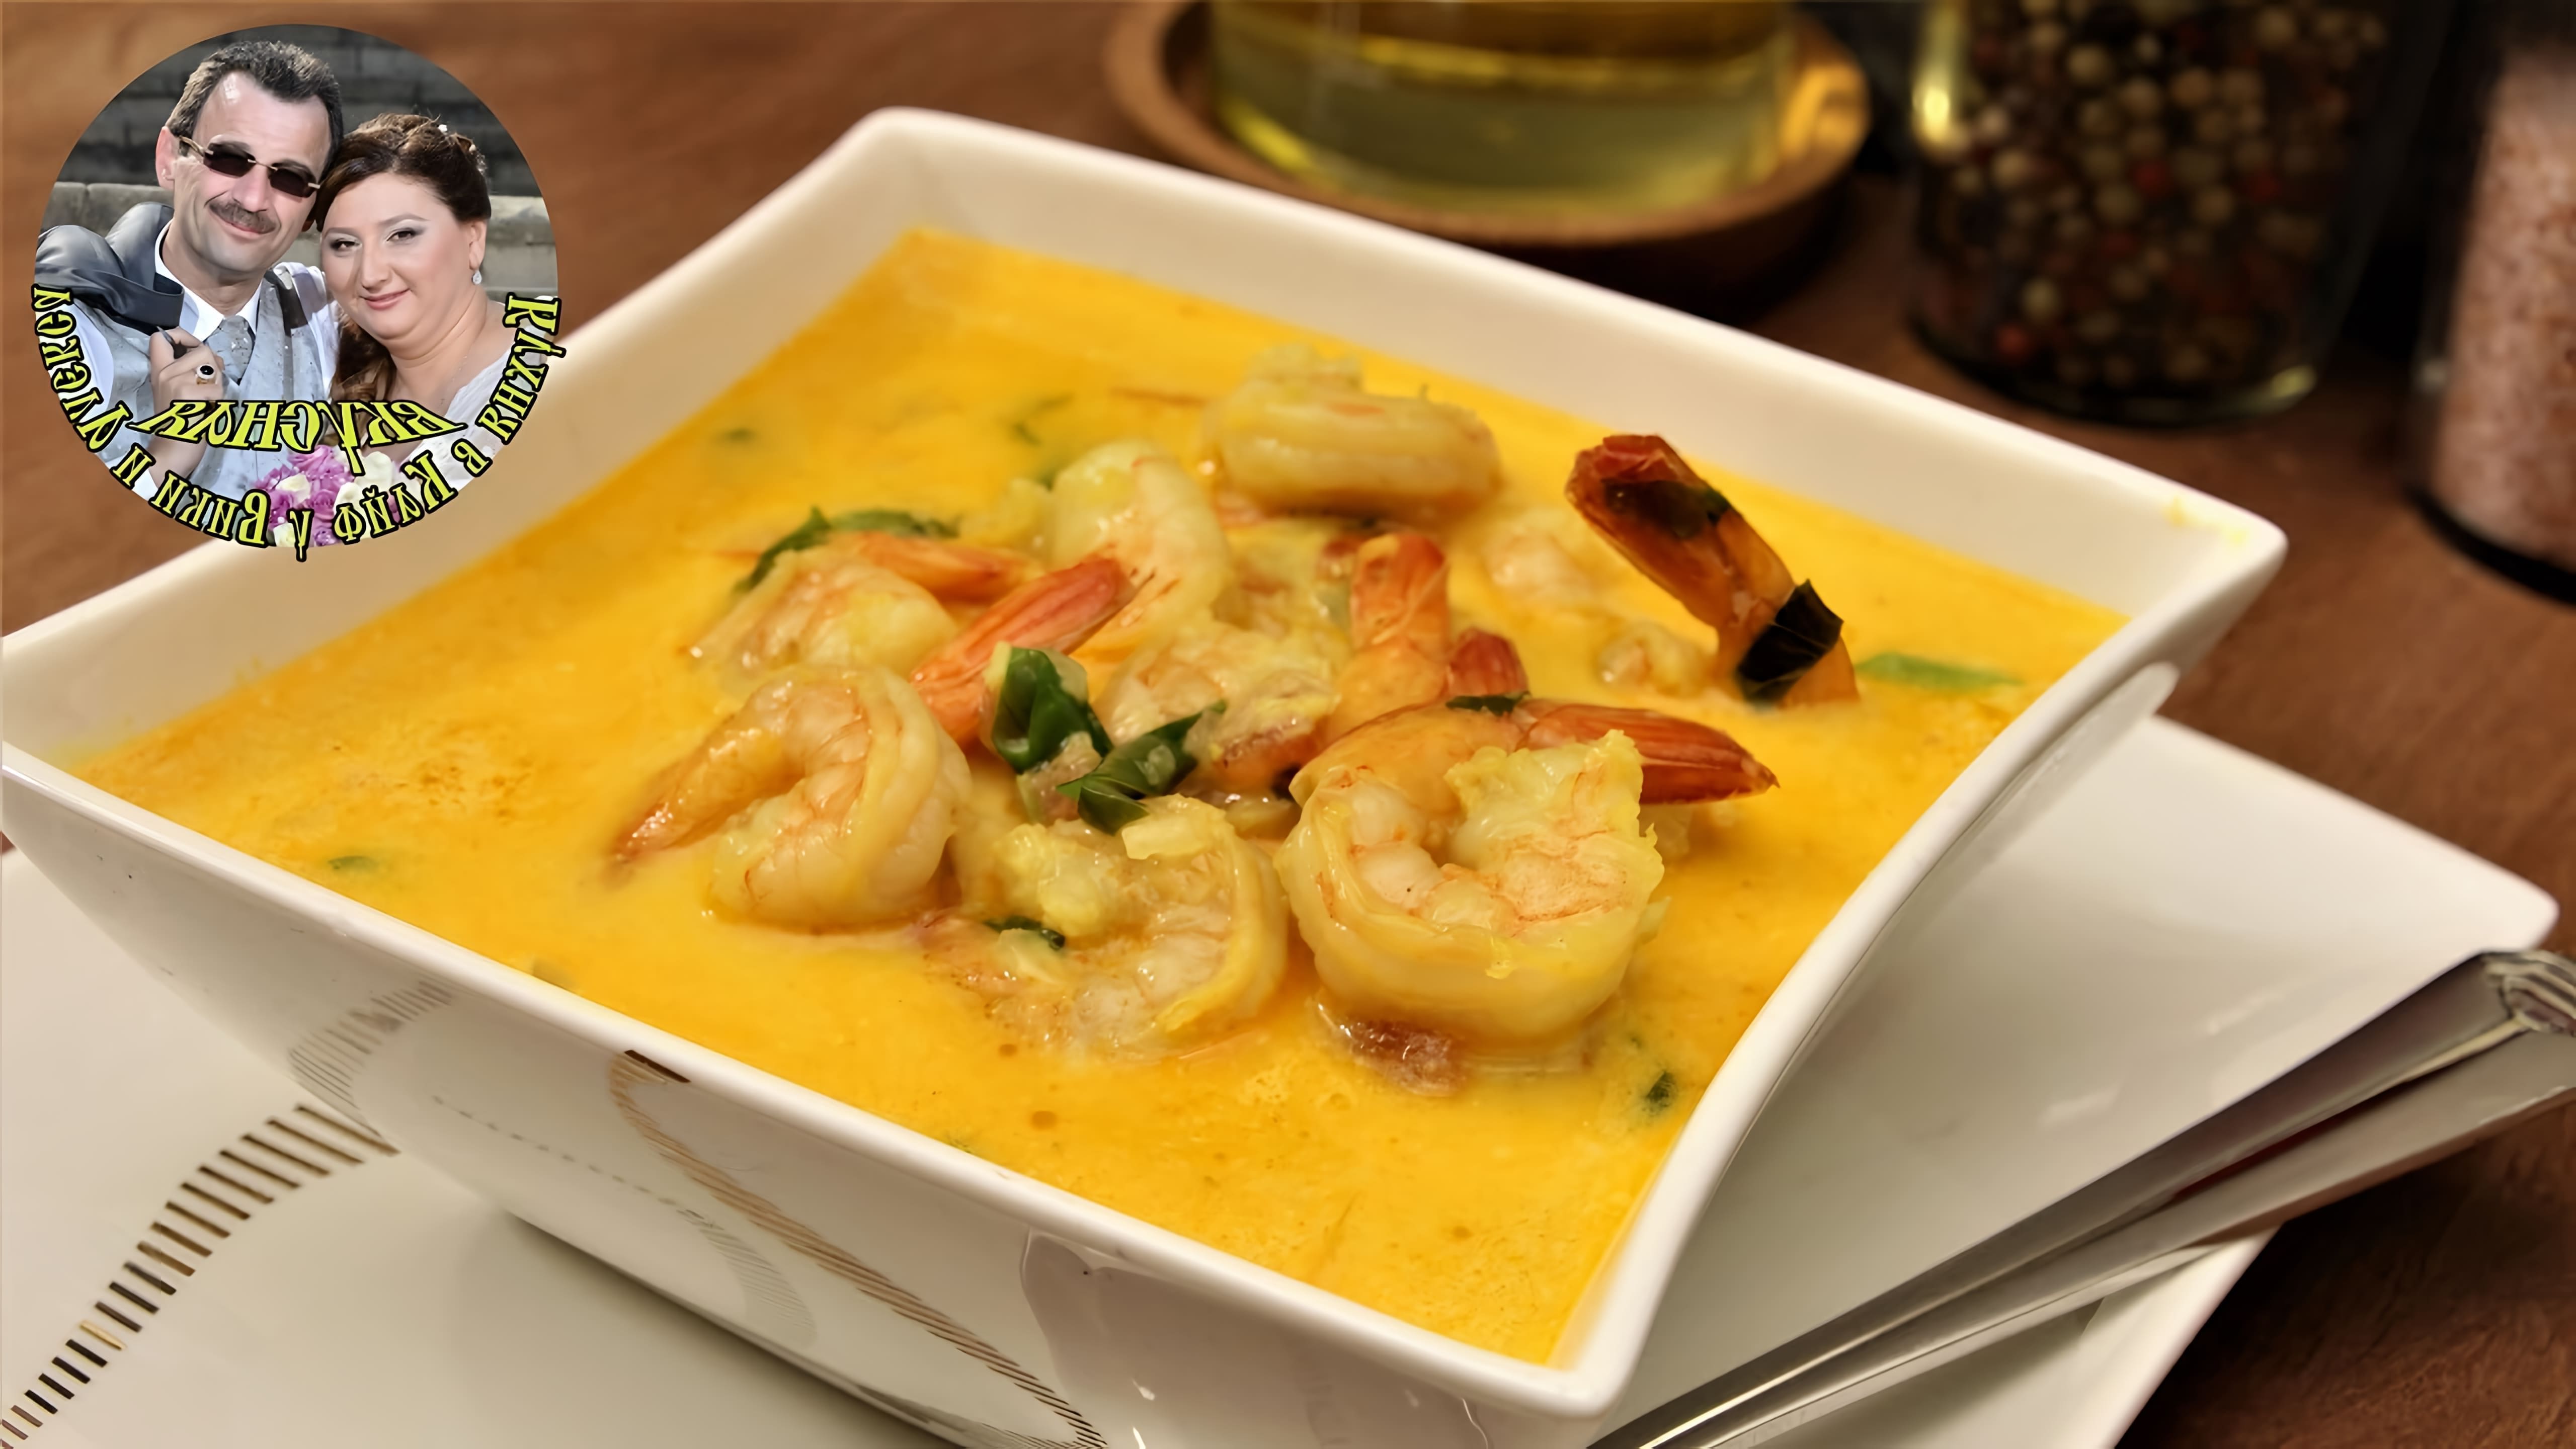 В этом видео демонстрируется рецепт тайского супа с креветками и кокосовым молоком